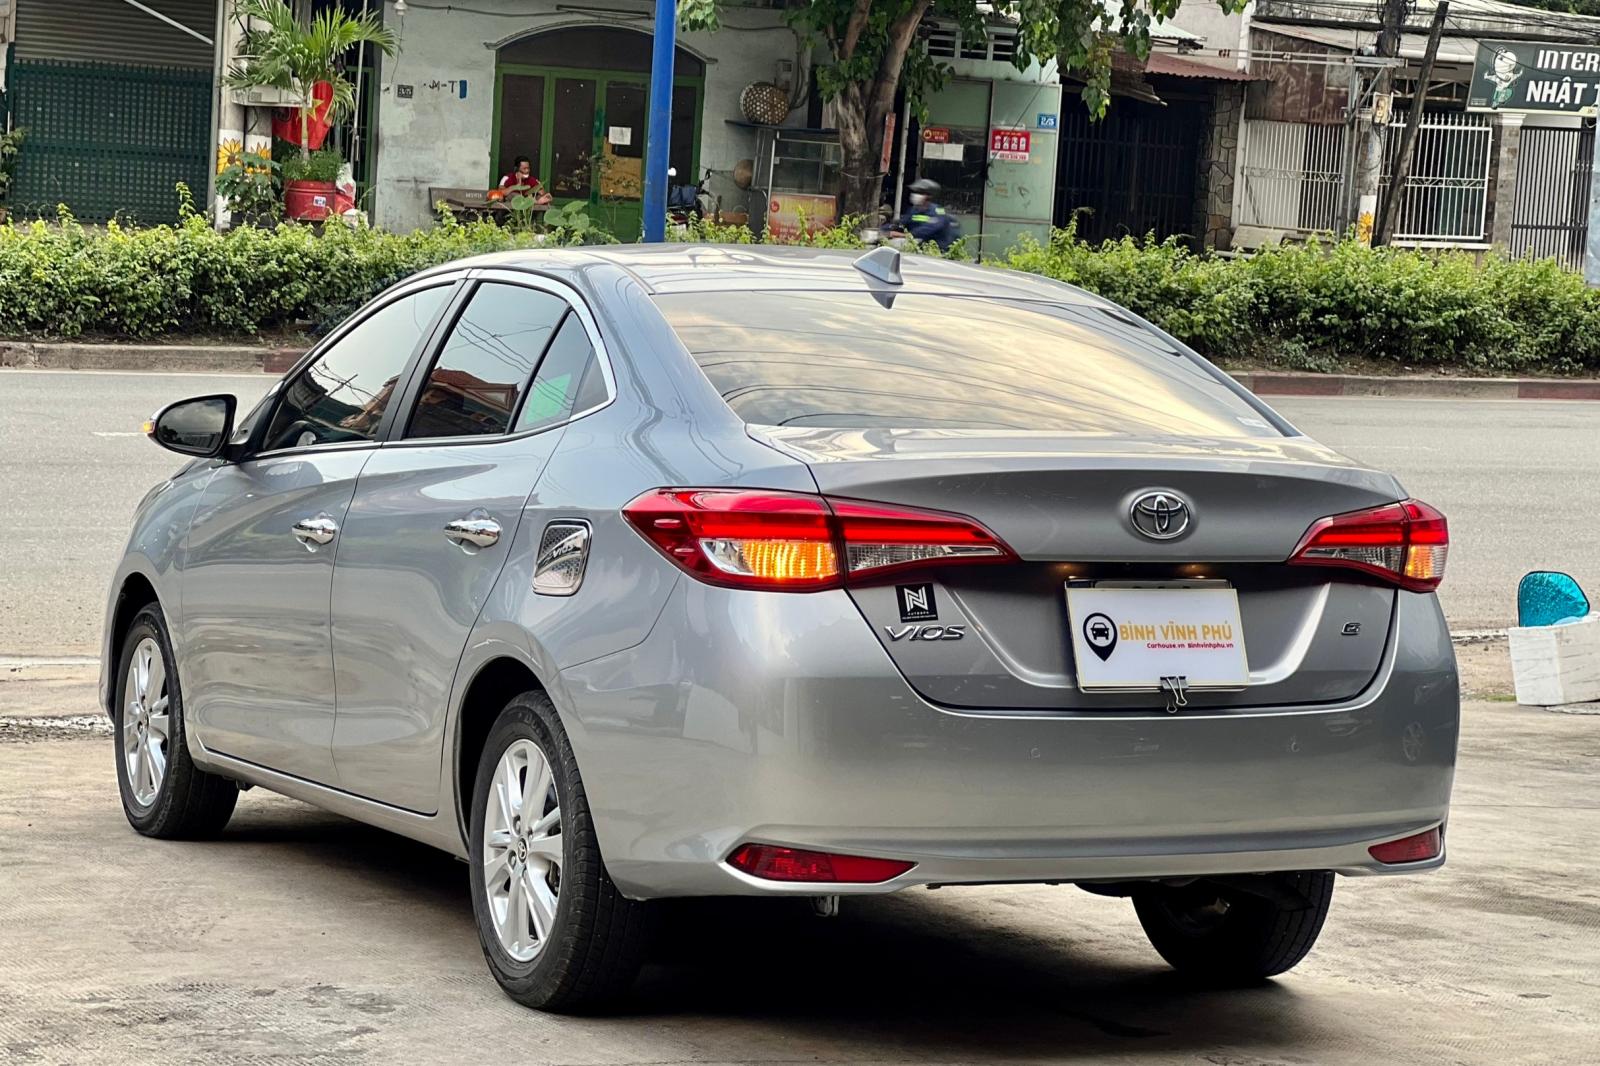 Toyota Vios G 2019 - -- Toyota Vios 1.5G màu bạc biển tỉnh. Sản Xuất 2019 